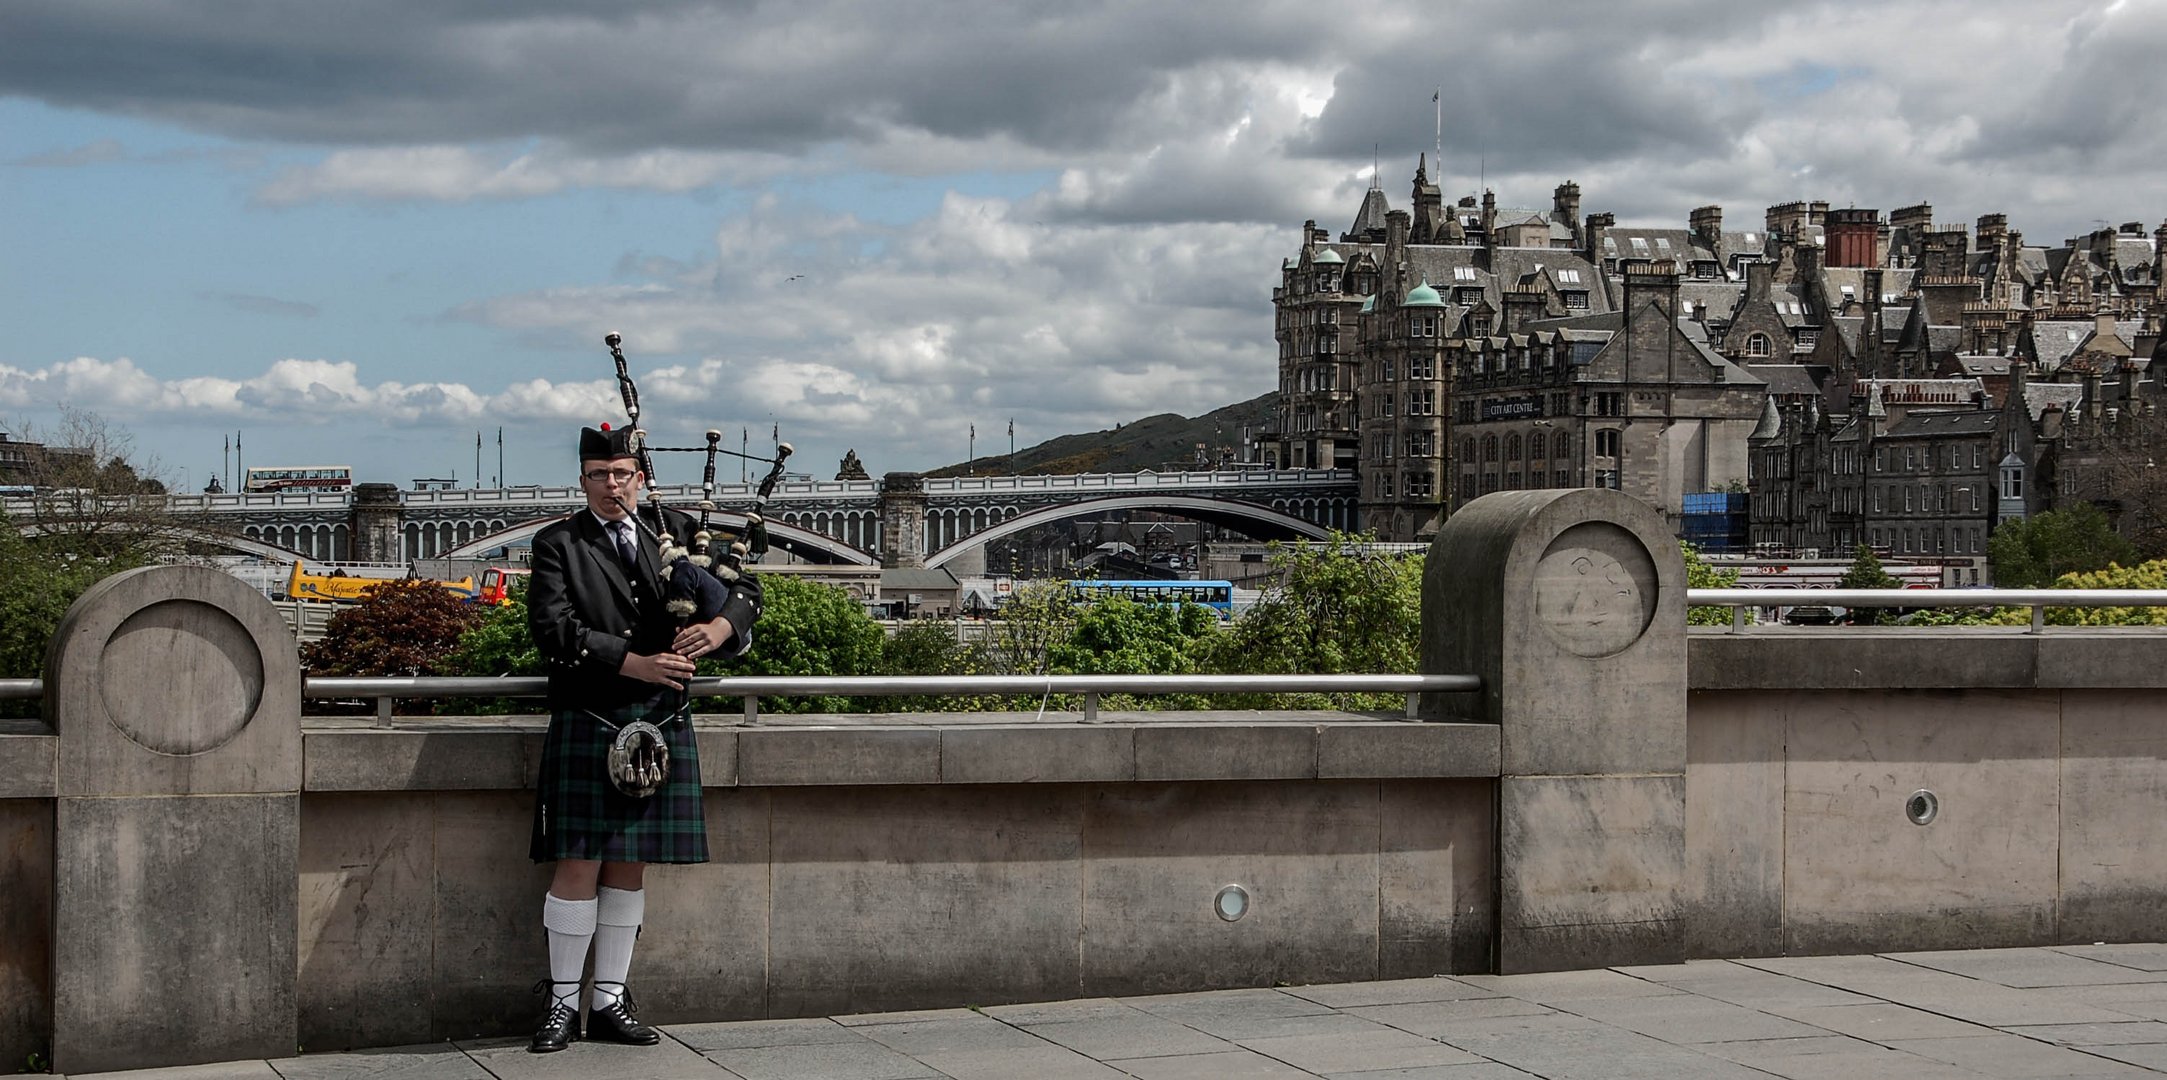 Lone Piper of Edinburgh